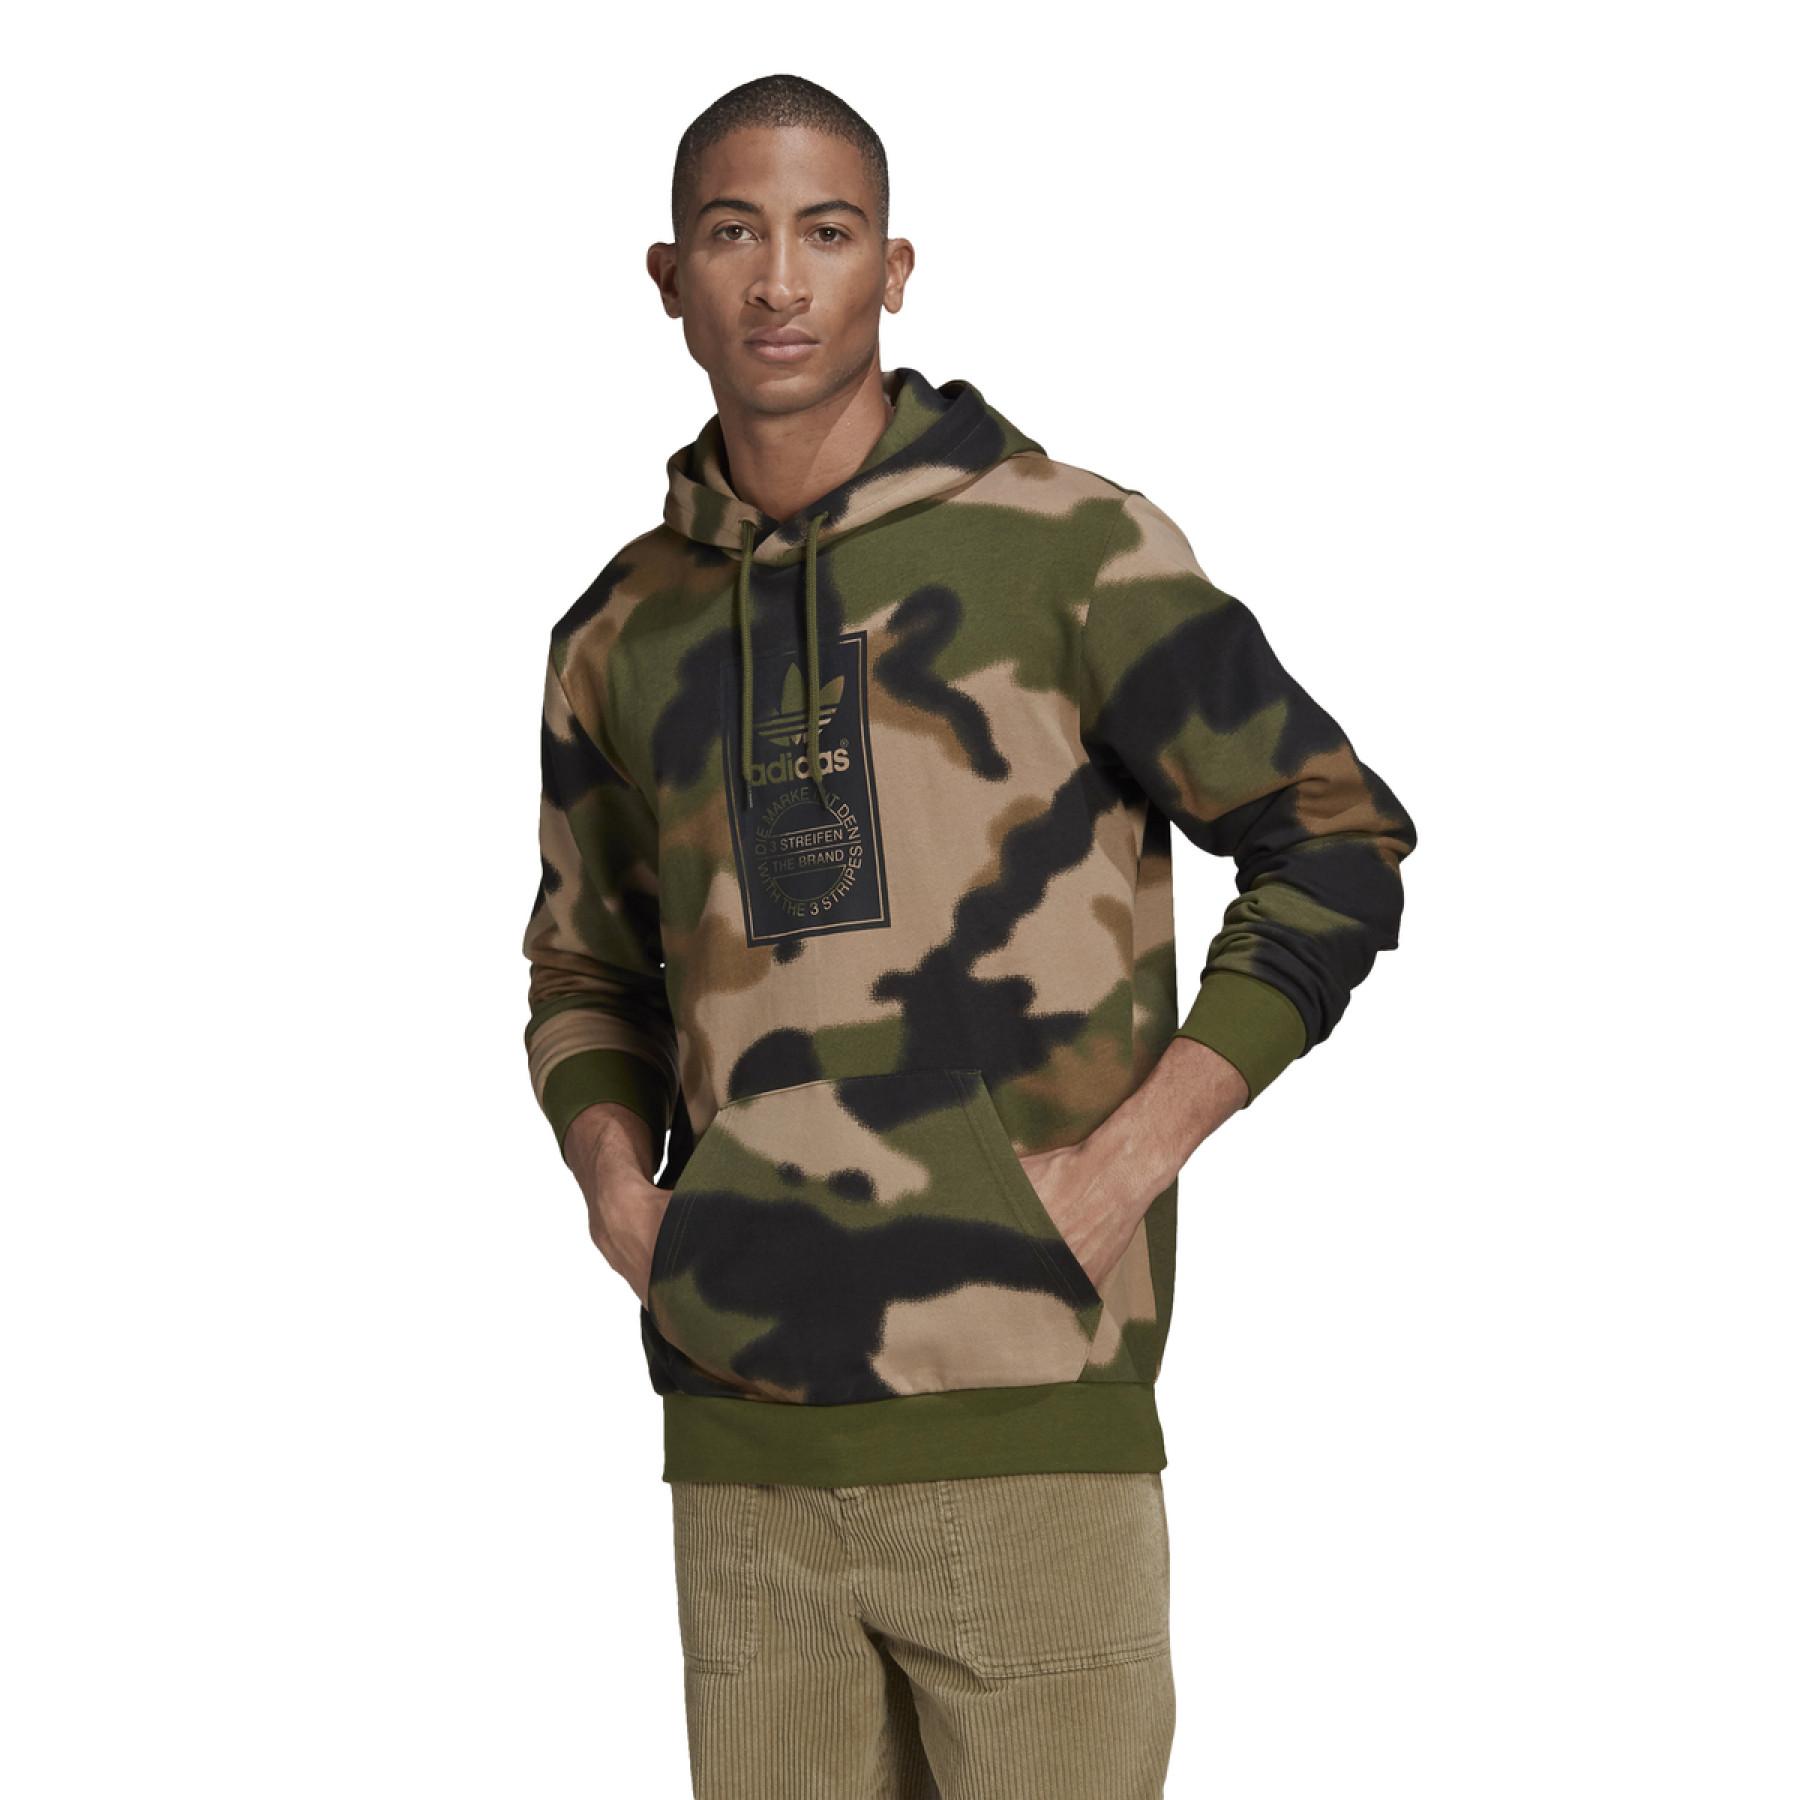 Sweatshirt à capuche adidas Originals Camo Allover Print